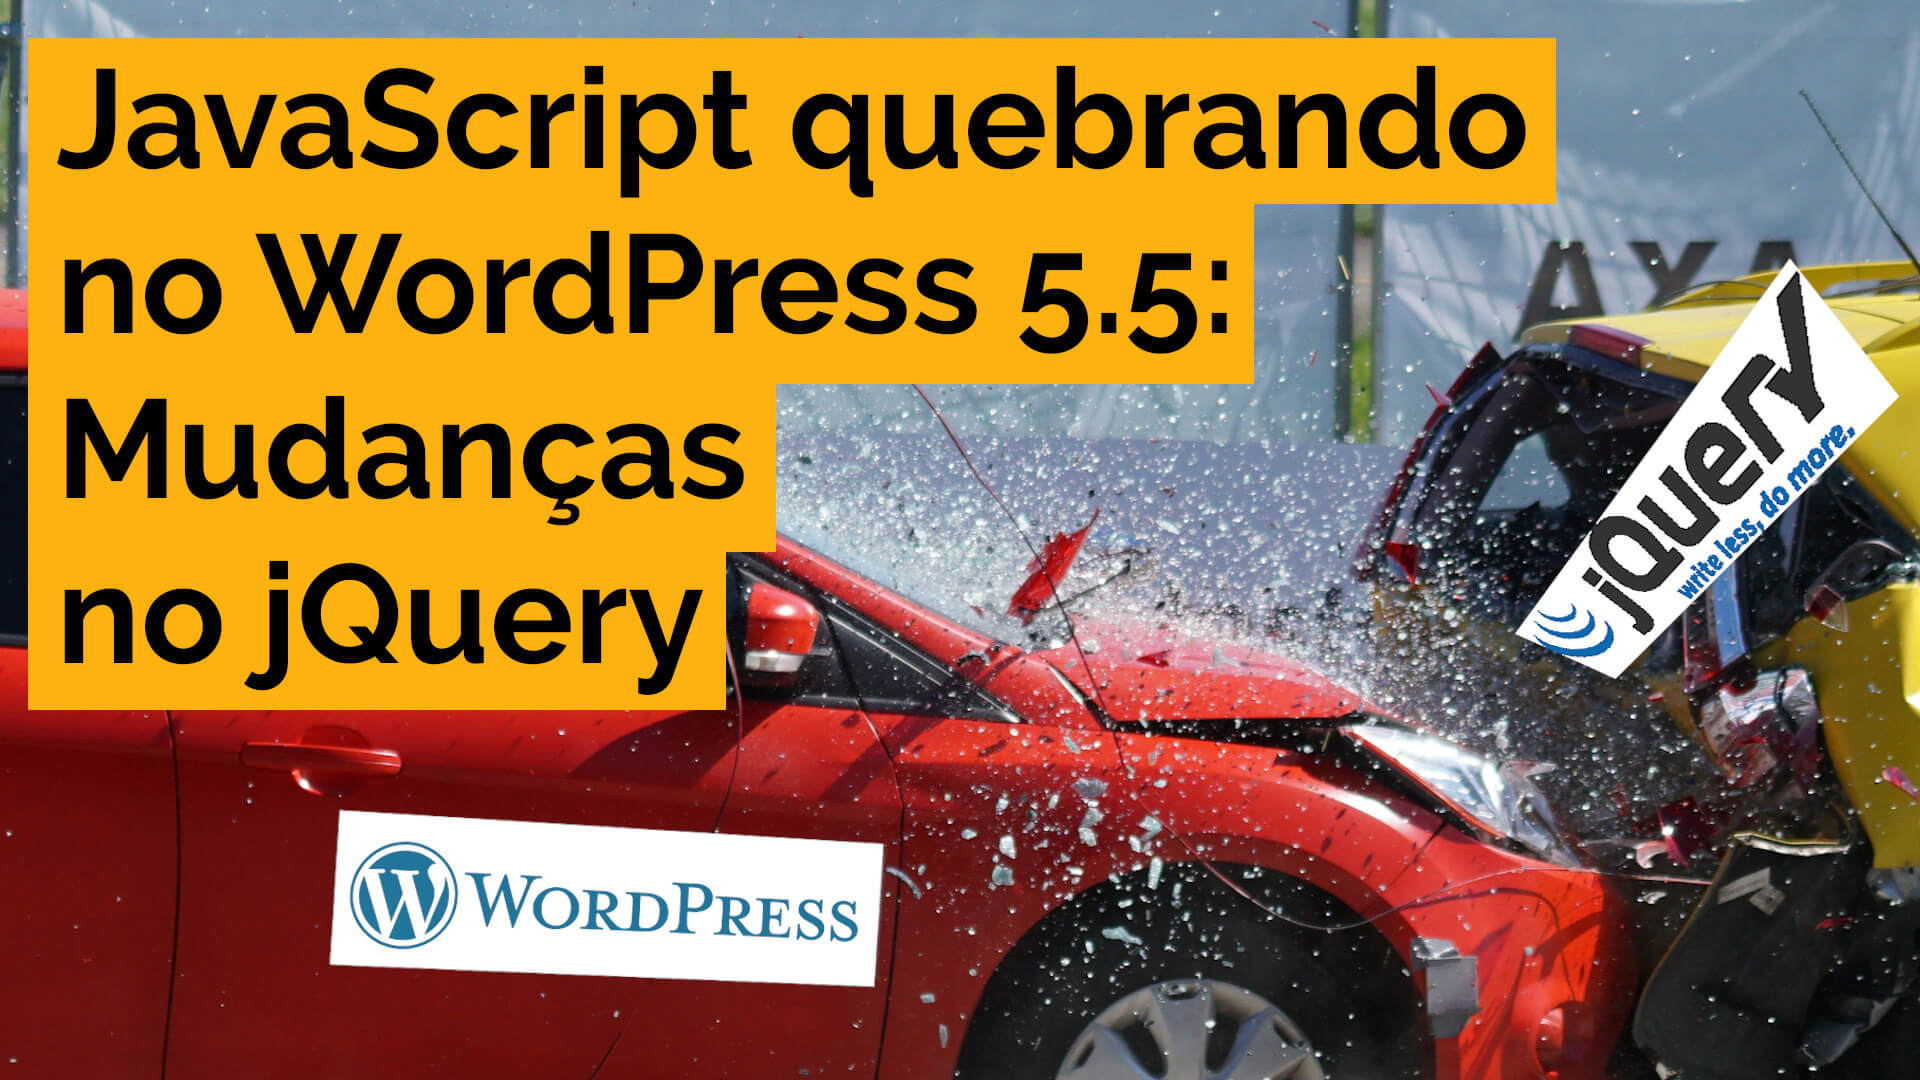 Você está visualizando atualmente JavaScript quebrando no WordPress 5.5: Mudanças no jQuery